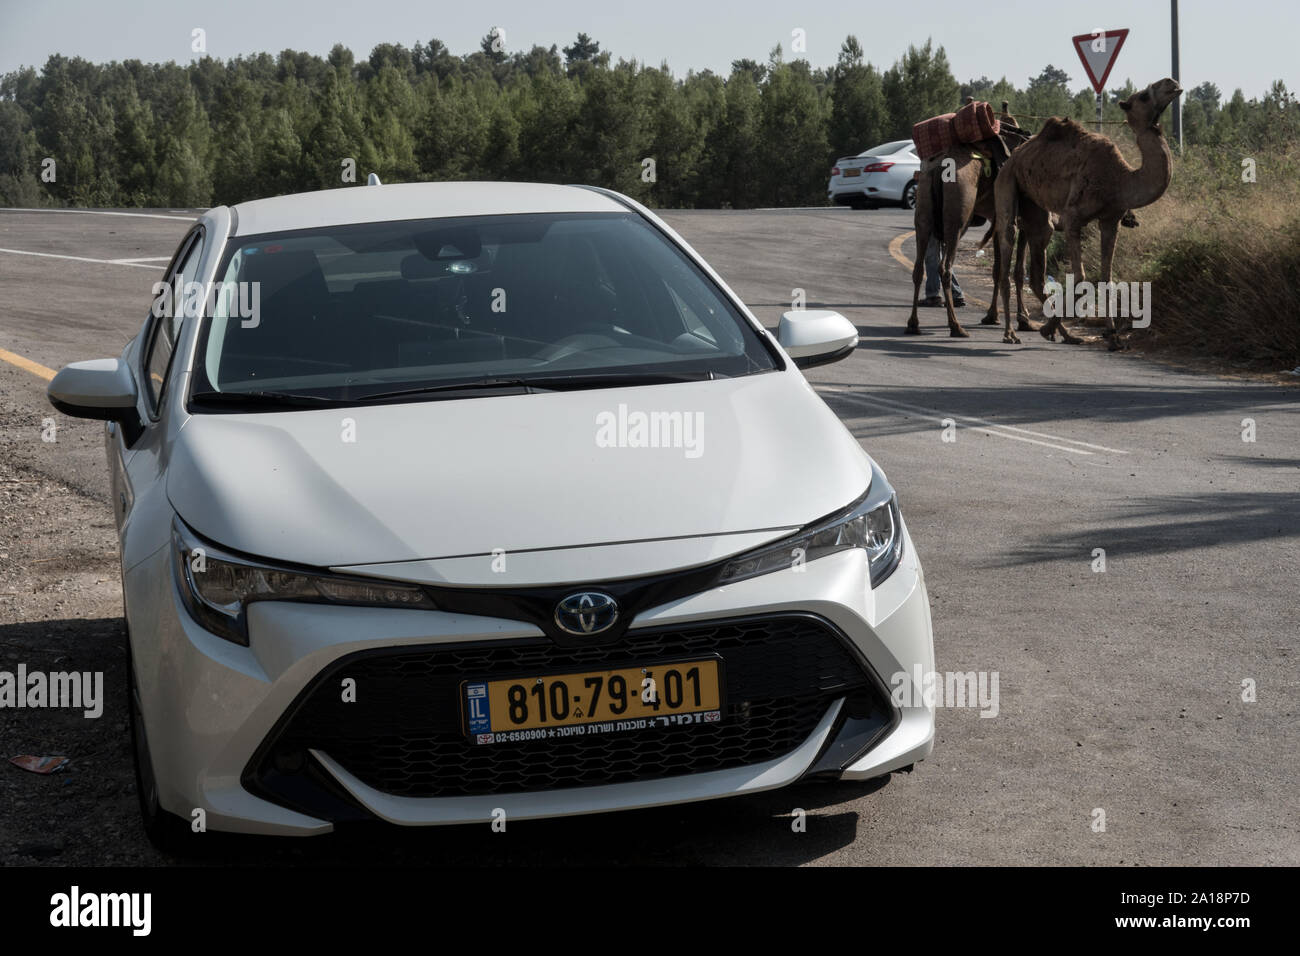 Un 2019 Toyota Corolla eccitare berlina sorge al primo piano con una coppia di cammelli in background che illustra i metodi di trasporto indotta Foto Stock